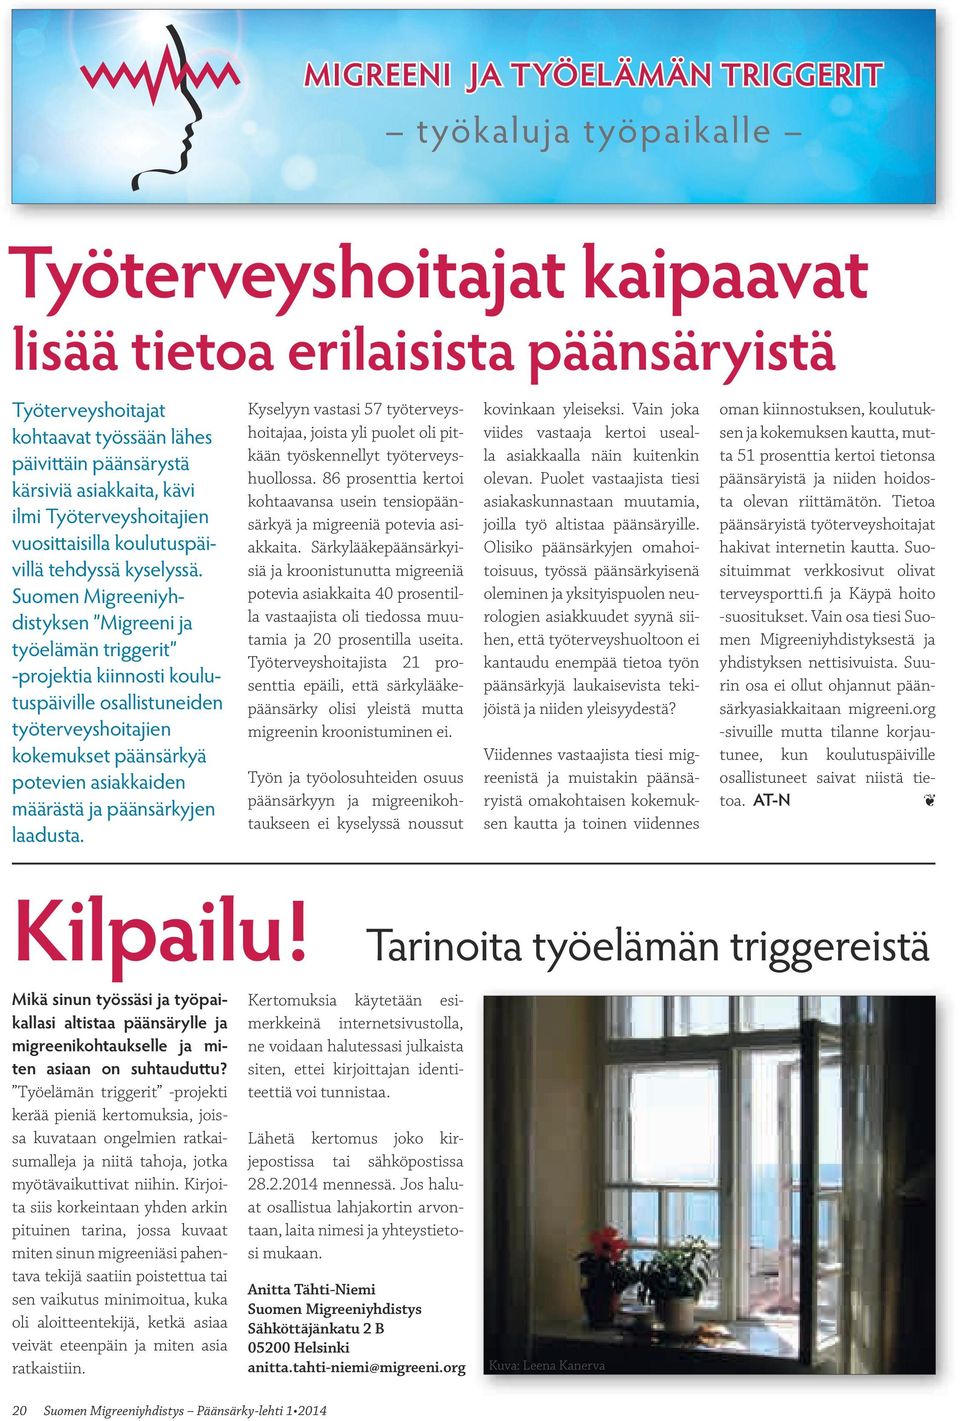 Suomen Migreeniyhdistyksen Migreeni ja työelämän triggerit -projektia kiinnosti koulutuspäiville osallistuneiden työterveyshoitajien kokemukset päänsärkyä potevien asiakkaiden määrästä ja